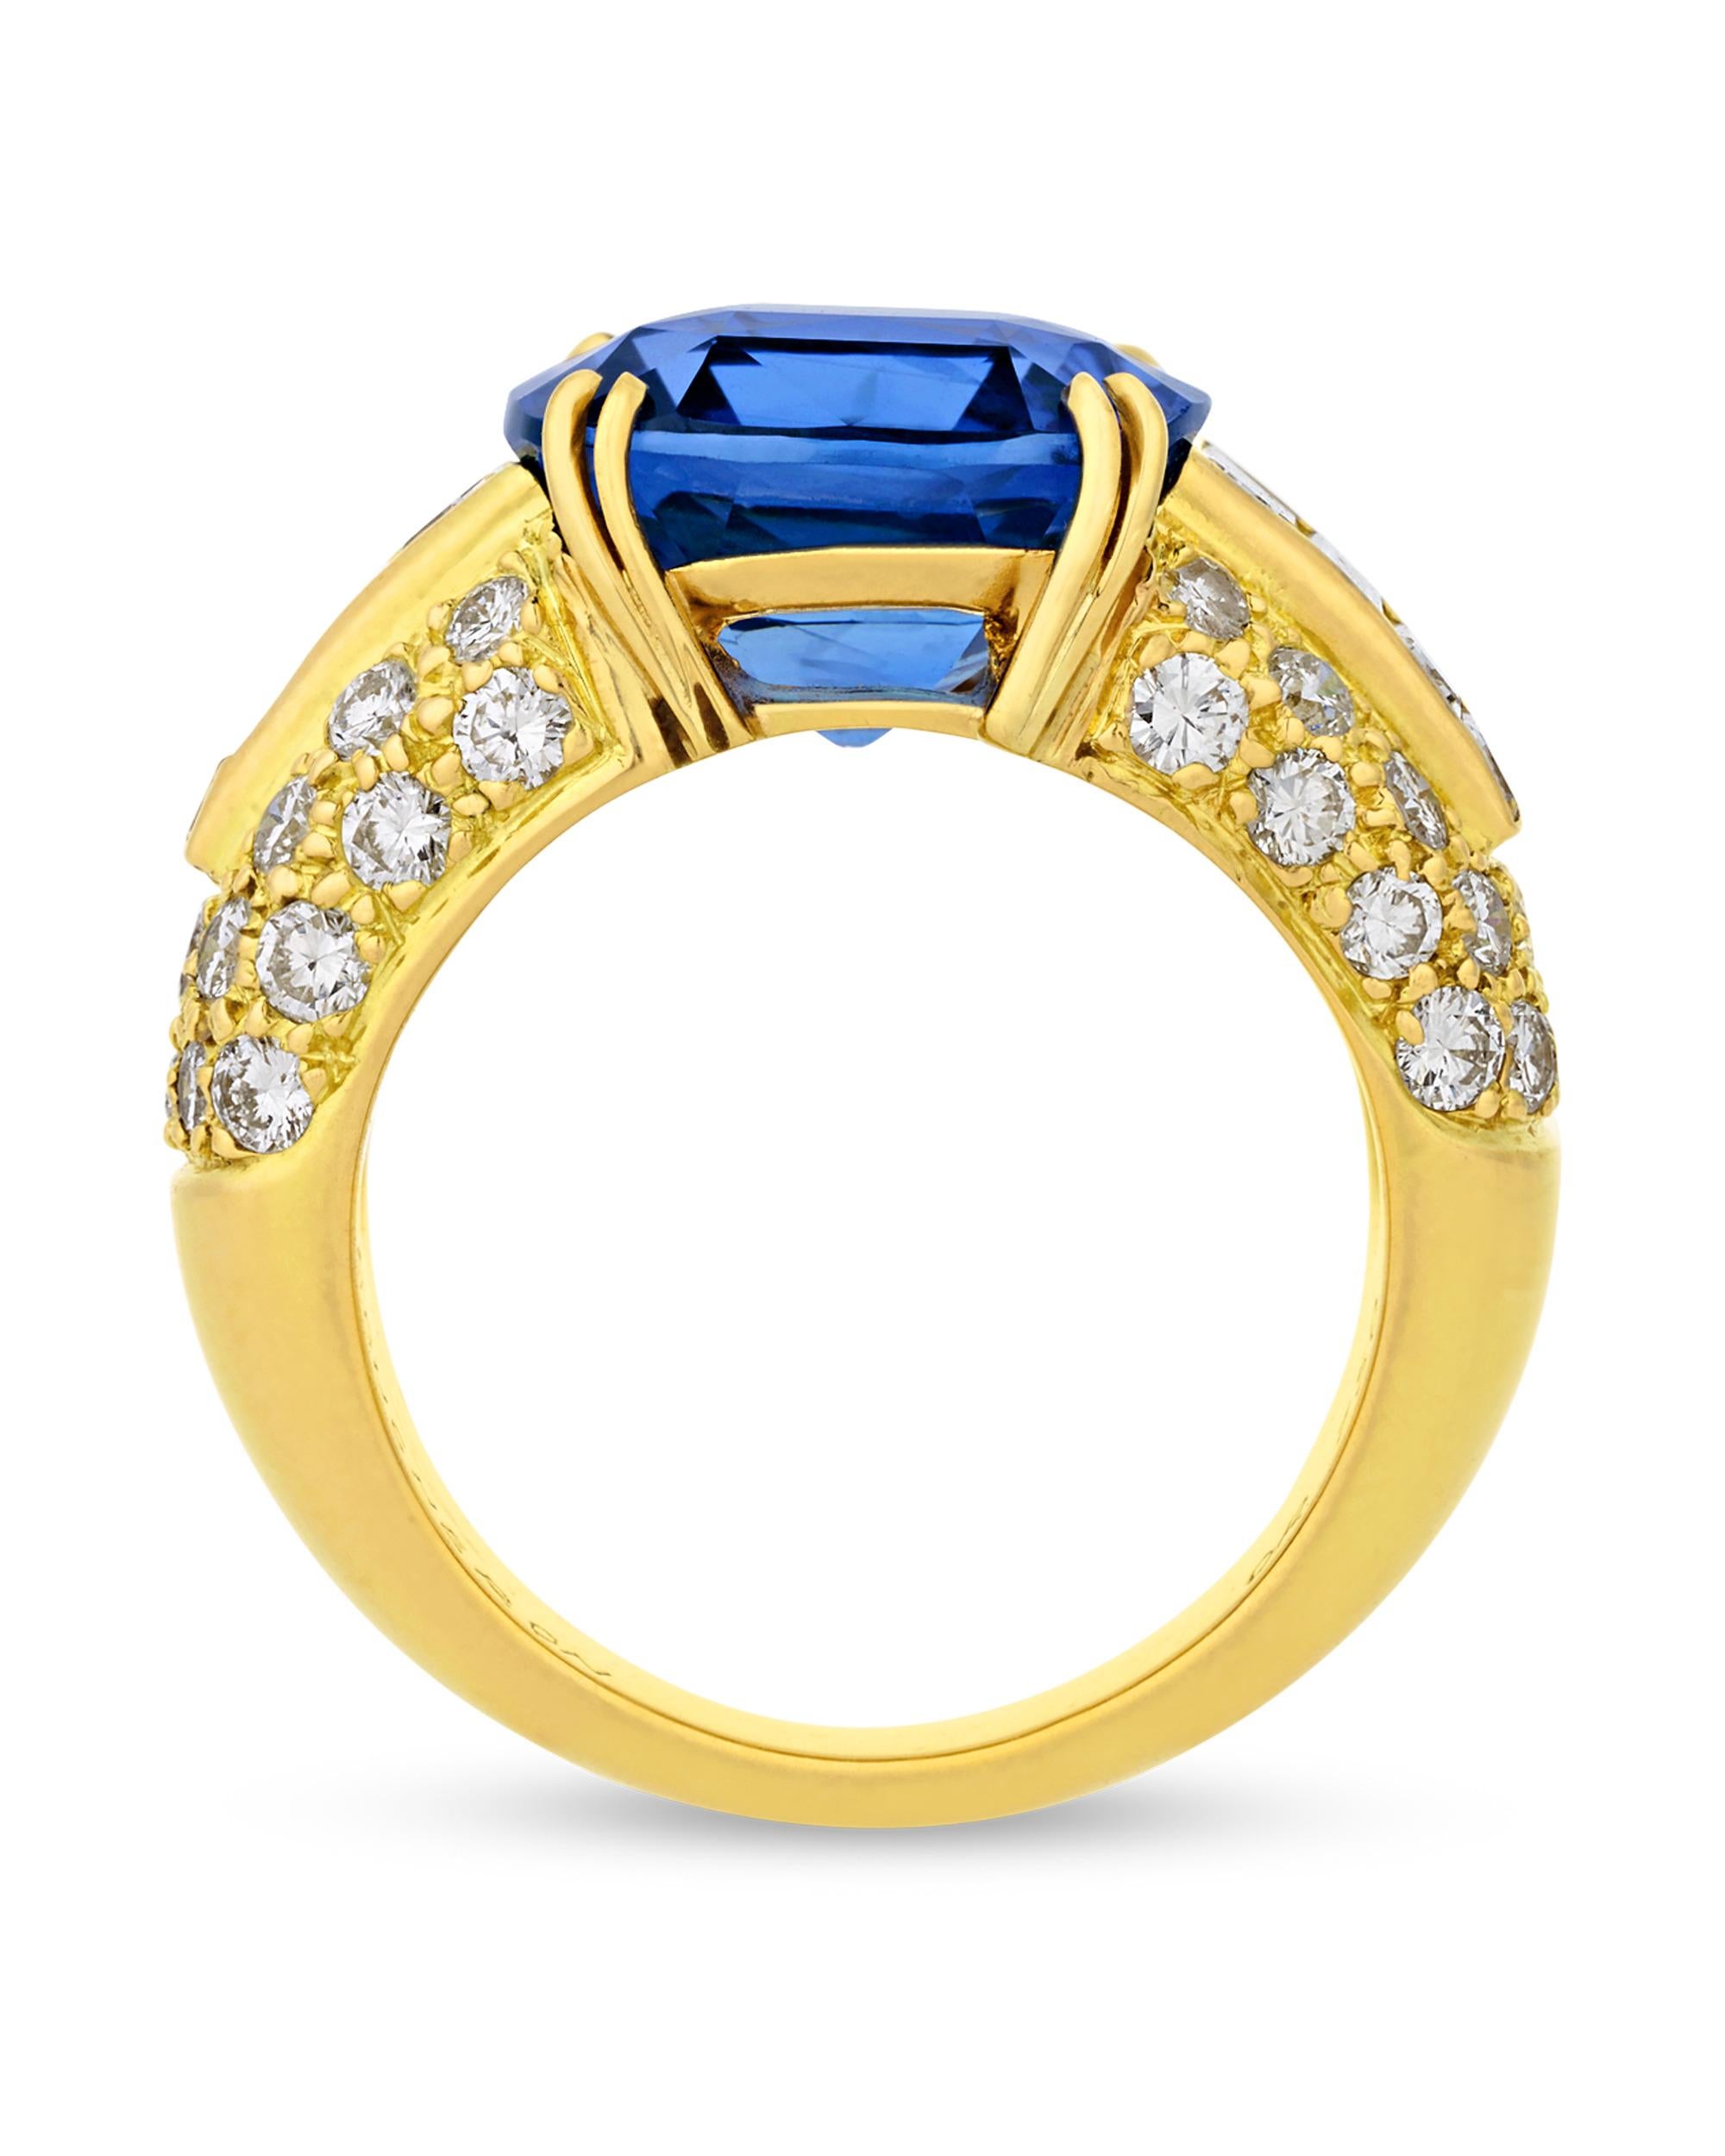 Ein außergewöhnlicher königsblauer Saphir von 7,11 Karat bildet den Mittelpunkt dieses Rings. Gübelin bescheinigt dem Edelstein, dass er aus Burma stammt und völlig unbehandelt ist. Es gibt keine gemmologischen Hinweise auf Wärmebehandlungen, die